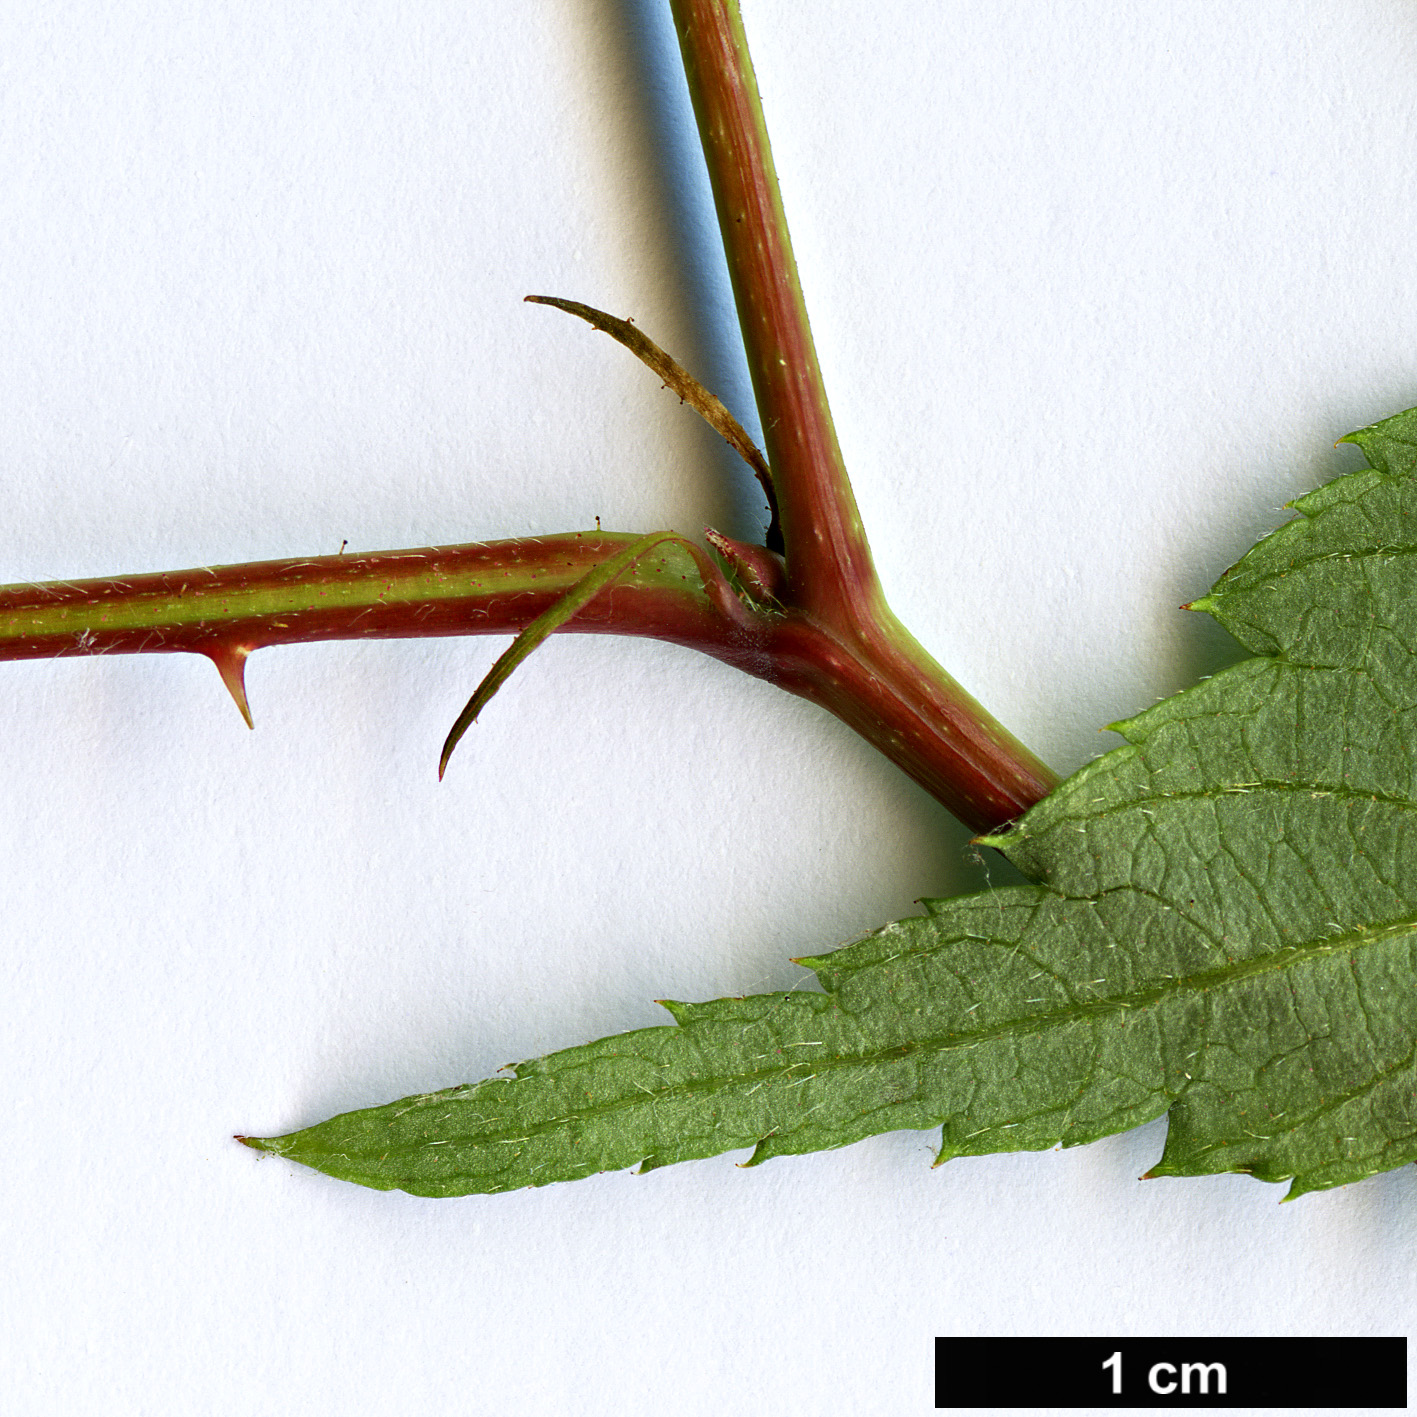 High resolution image: Family: Rosaceae - Genus: Rubus - Taxon: pentagonus